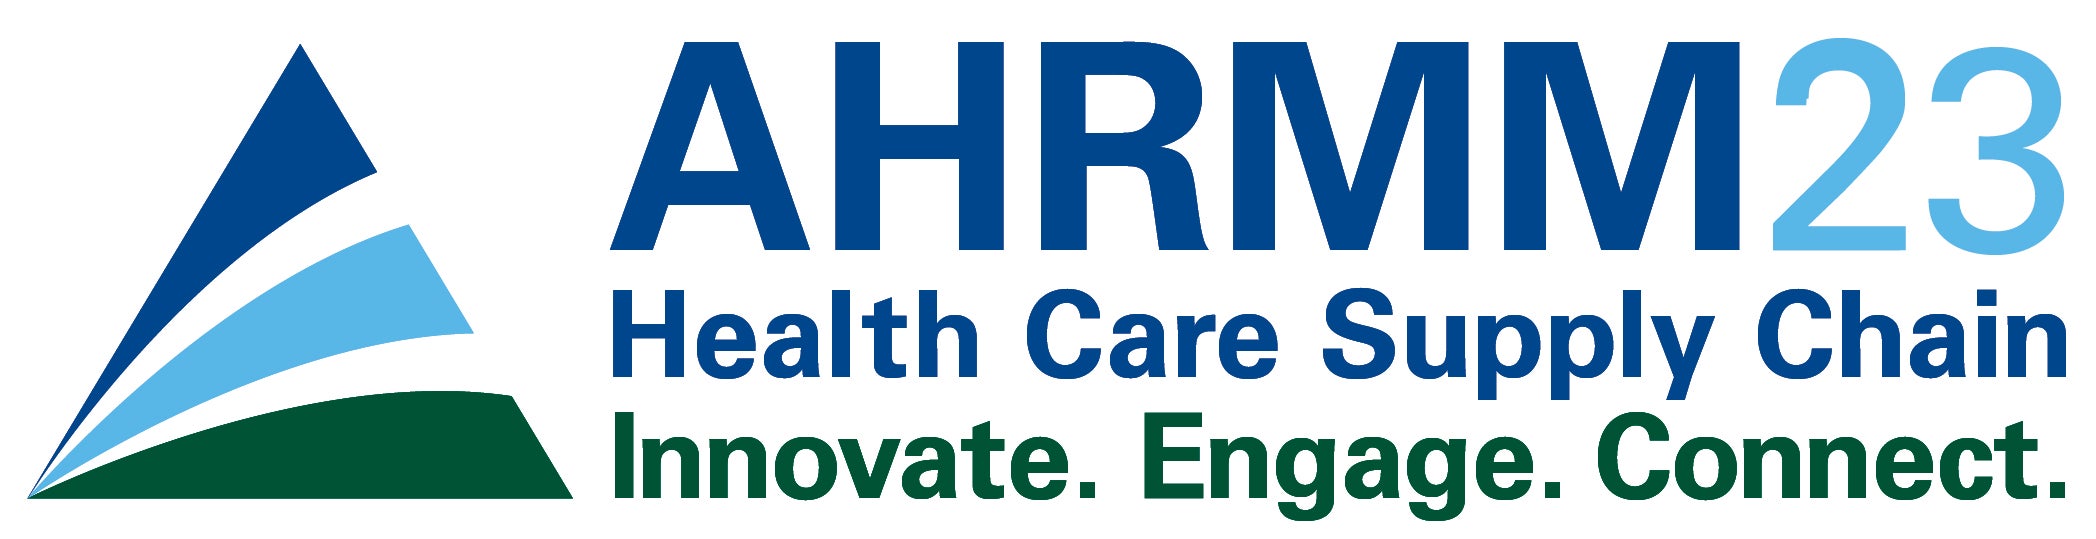 AHRMM23 Logo